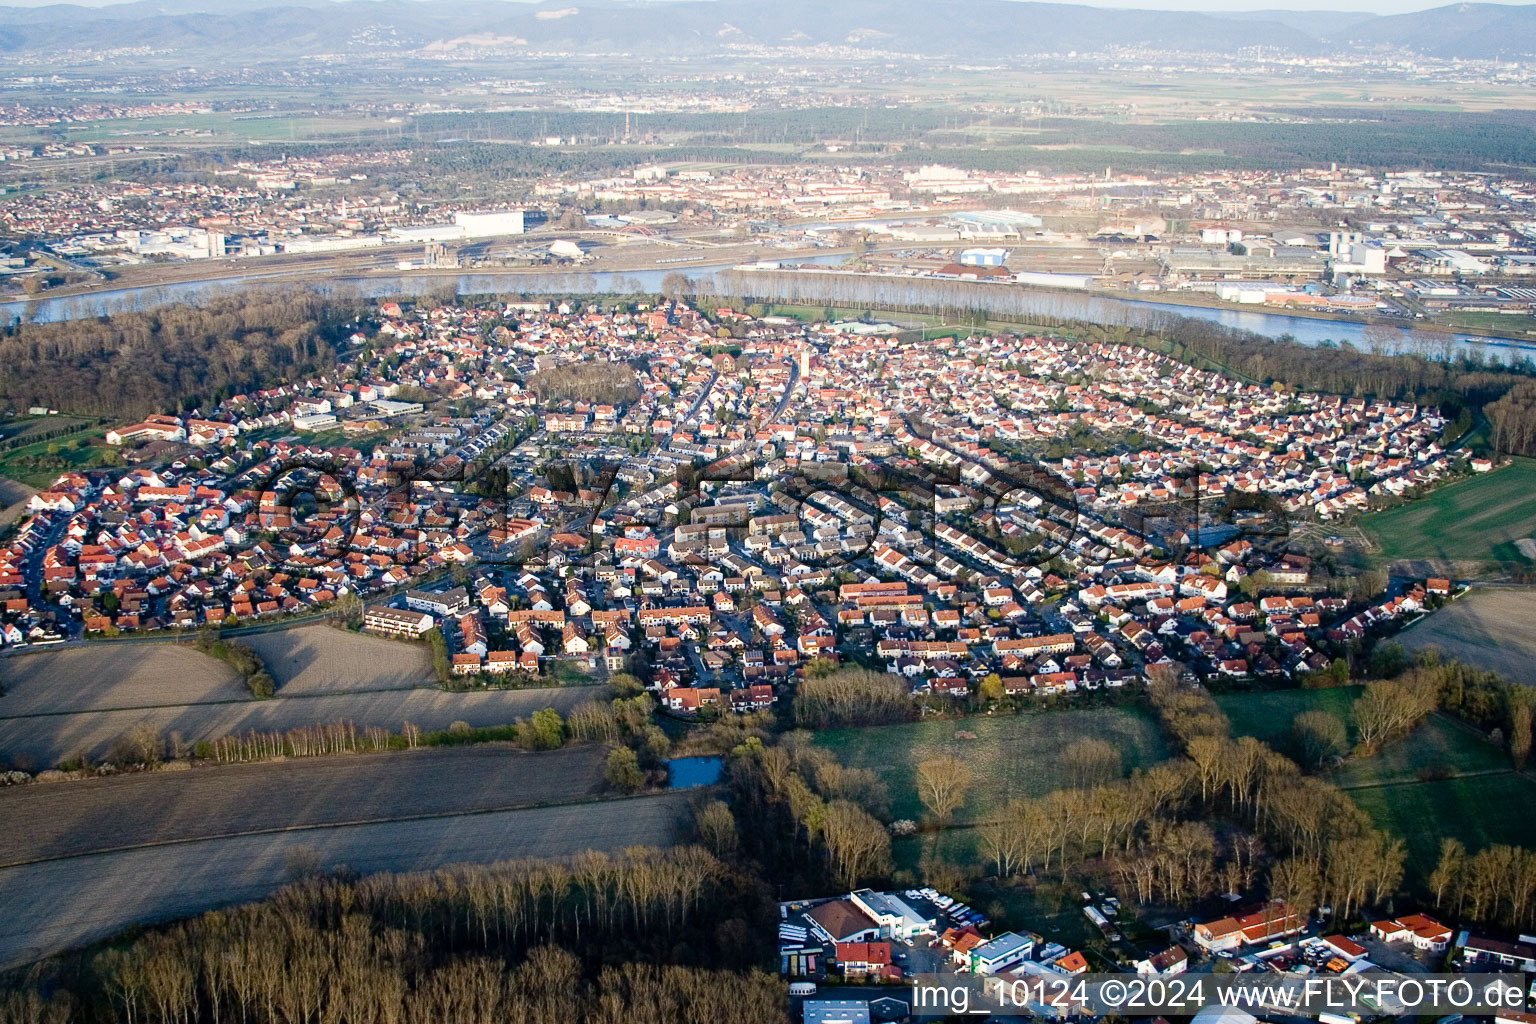 Vue aérienne de Vue des rues et des maisons des quartiers résidentiels à Altrip dans le département Rhénanie-Palatinat, Allemagne